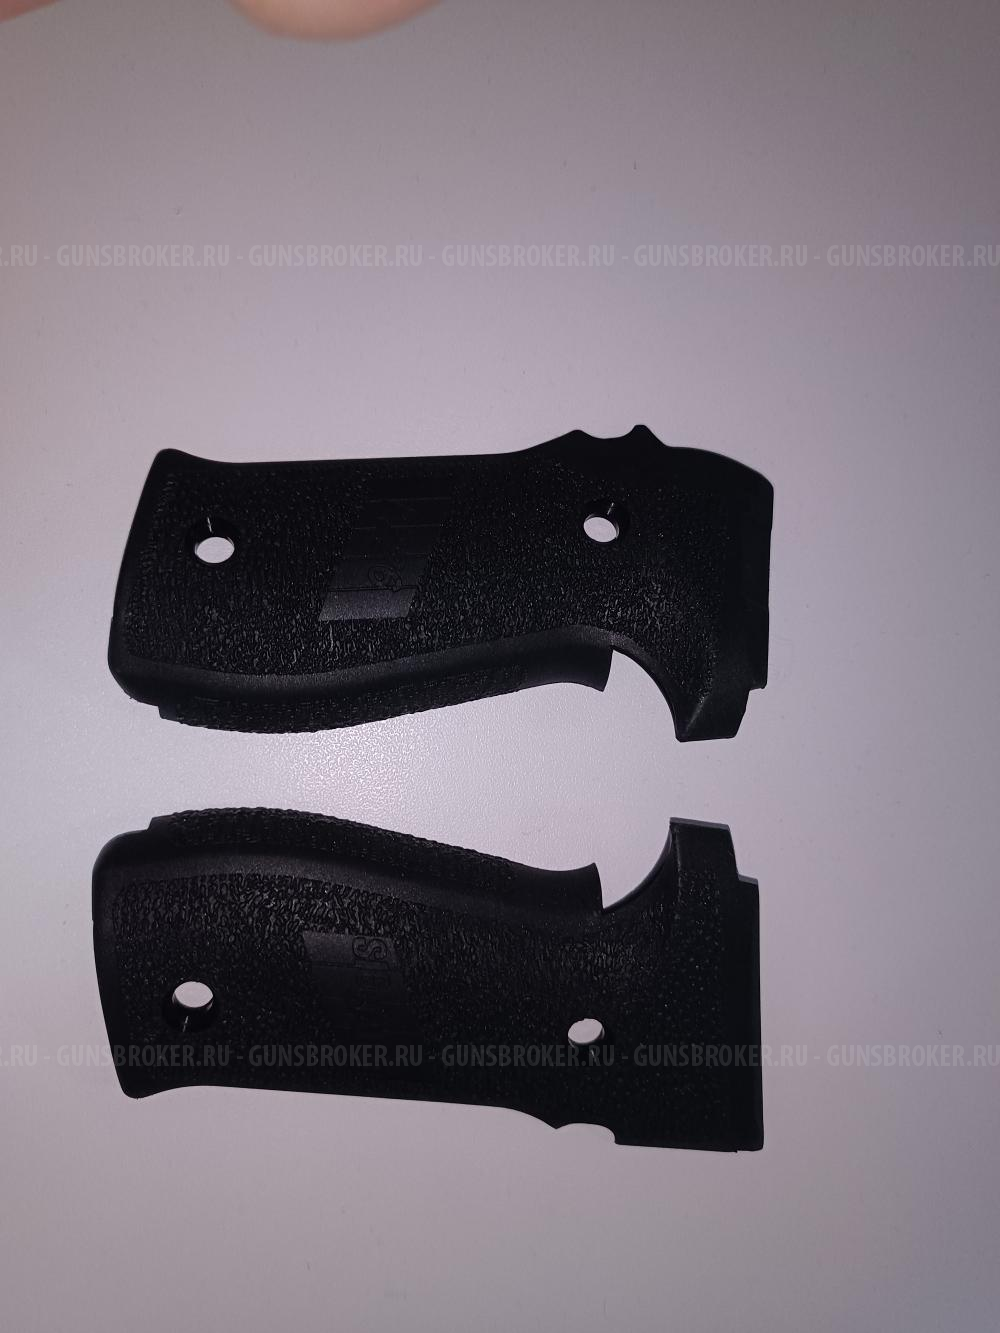 Накладки на рукоять для пистолета SigSauer P226 и его клонов